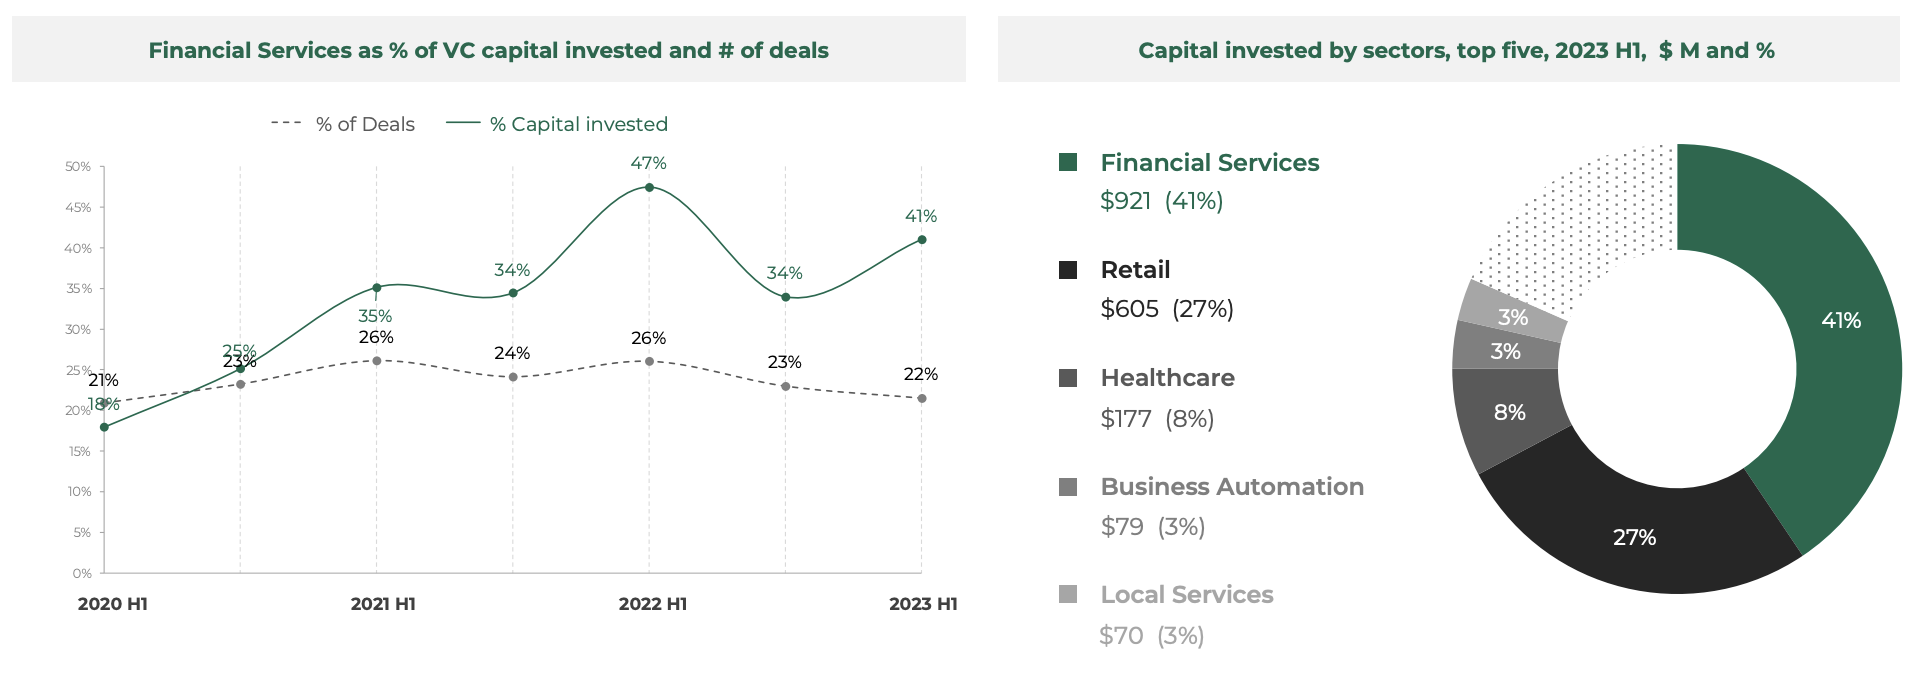 投資されたVC資本の%および取引数としての金融サービスのシェア、出典：Southeast Asia Tech Investment 2023 H1、Cento Ventures、2023年XNUMX月